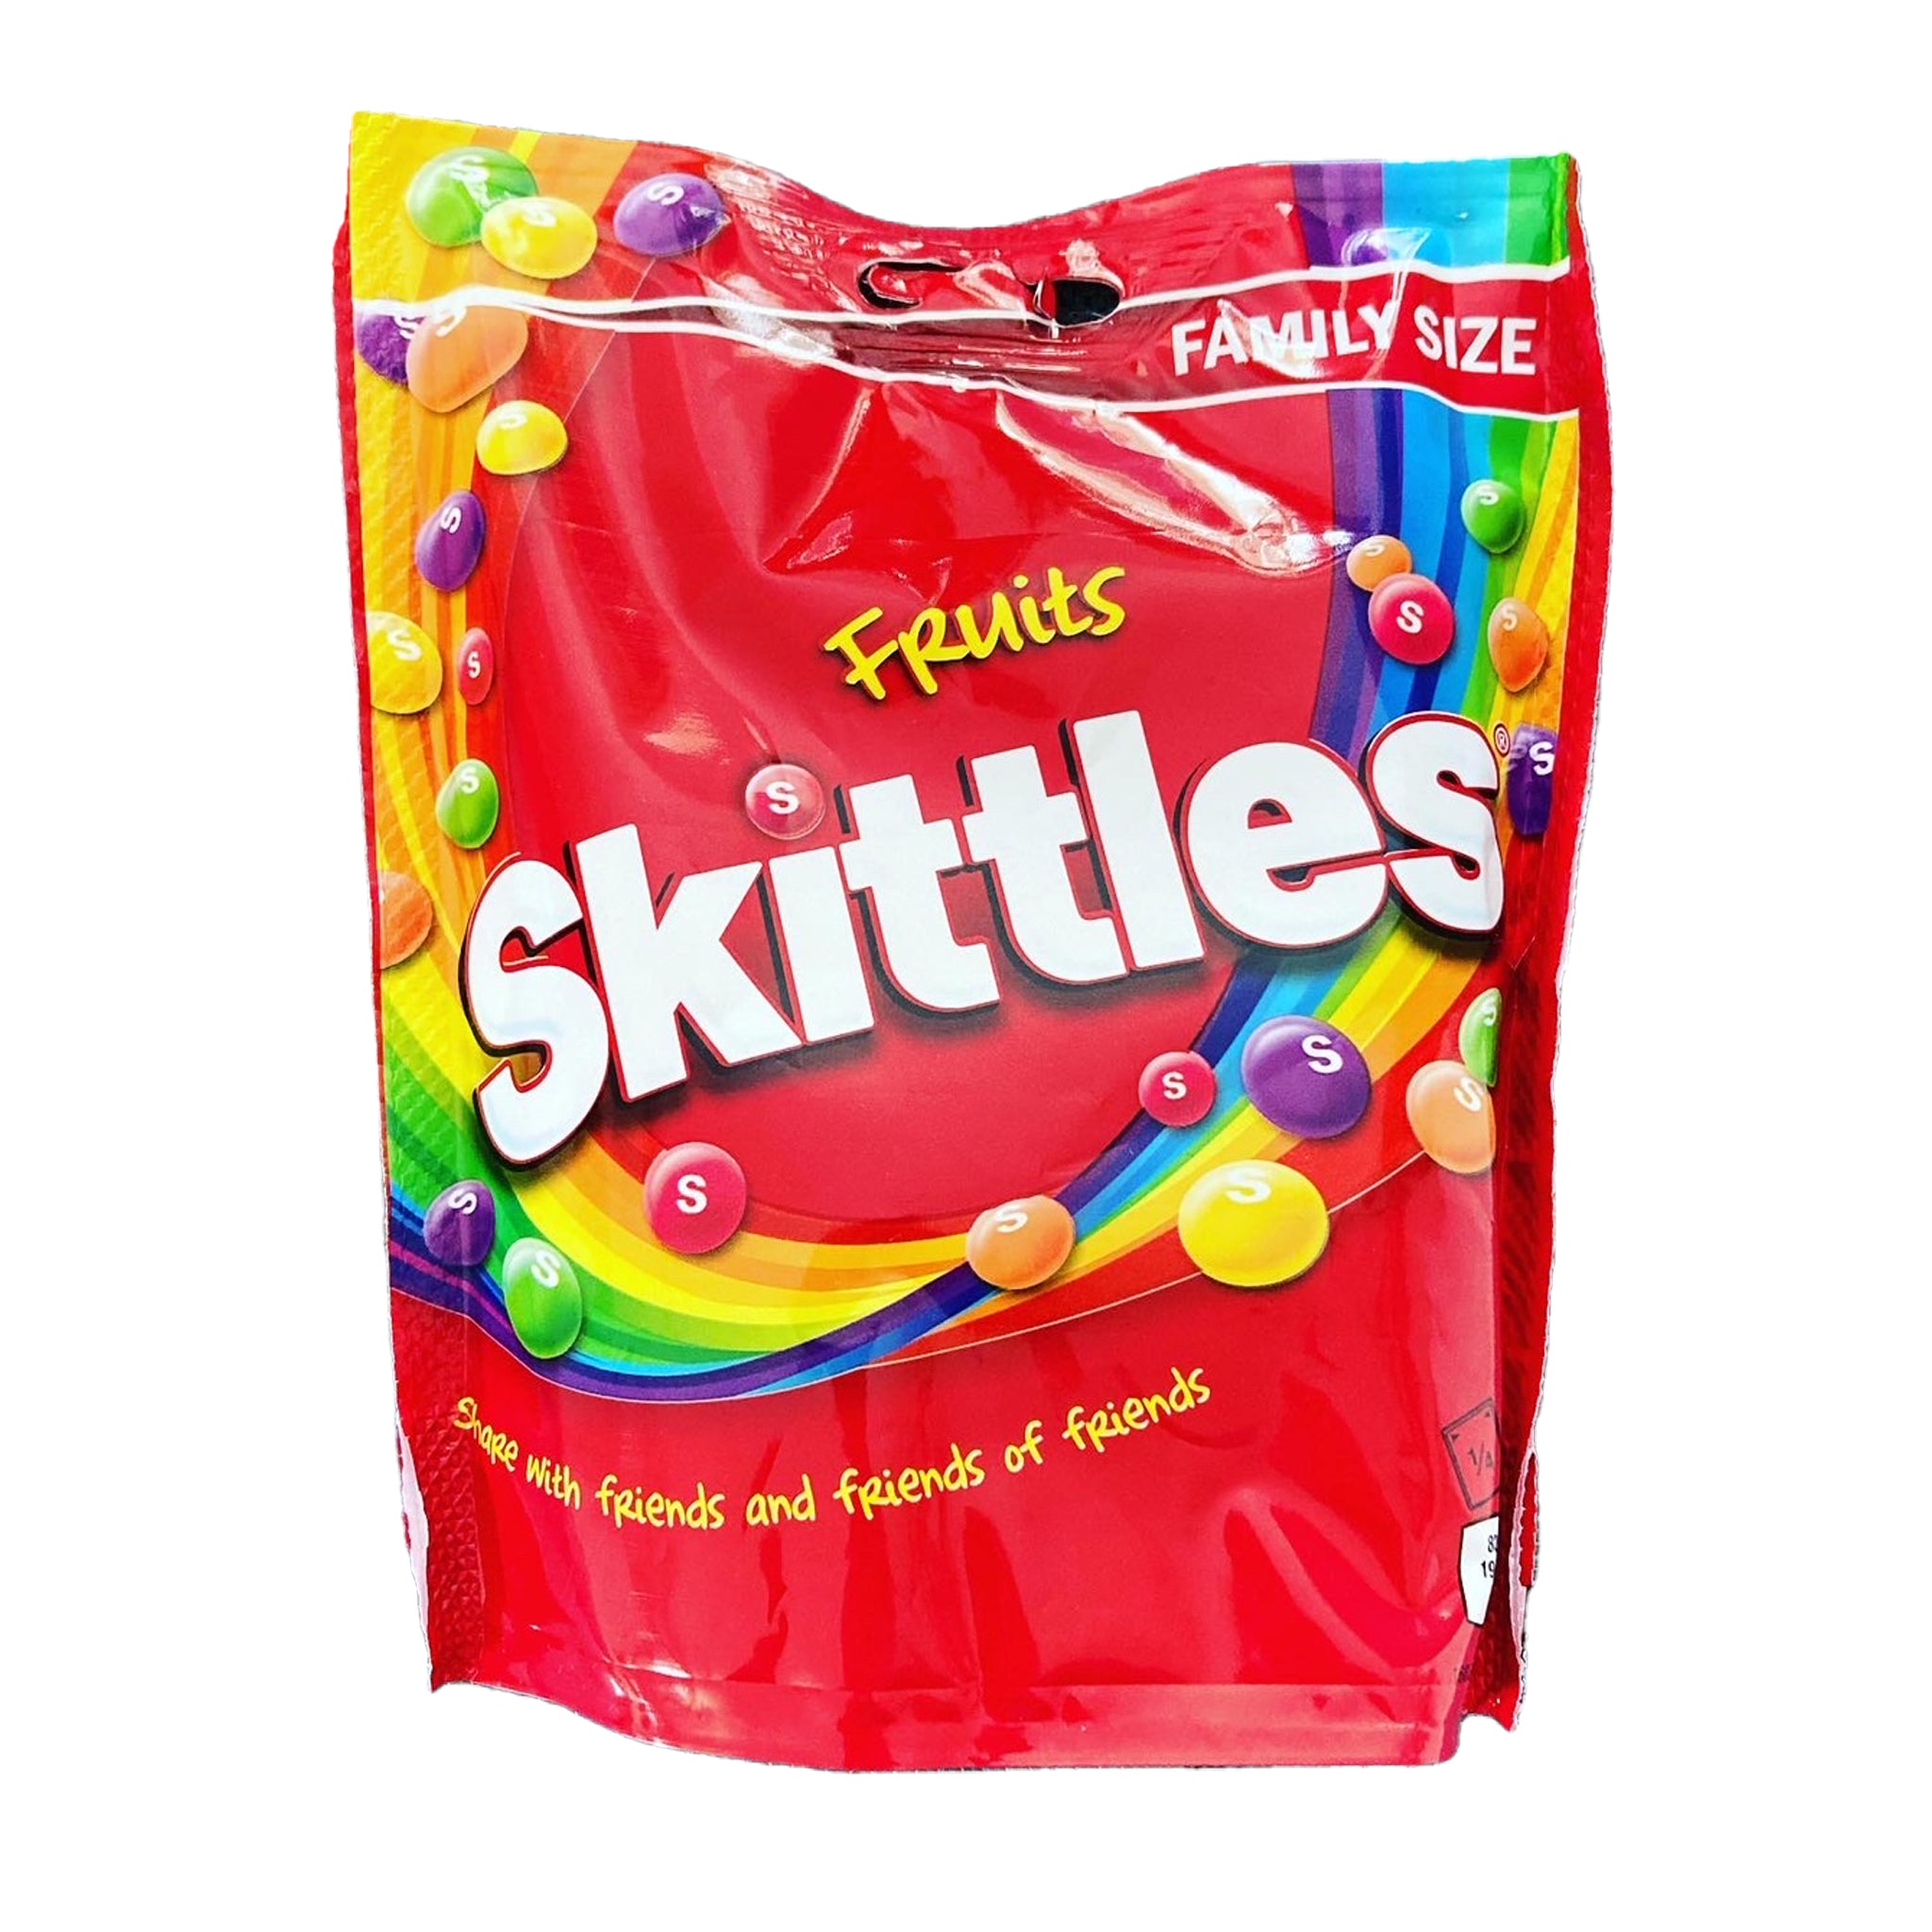 Skittles Fruits Family Size סקיטלס פירות אריזה משפחתית טעימים